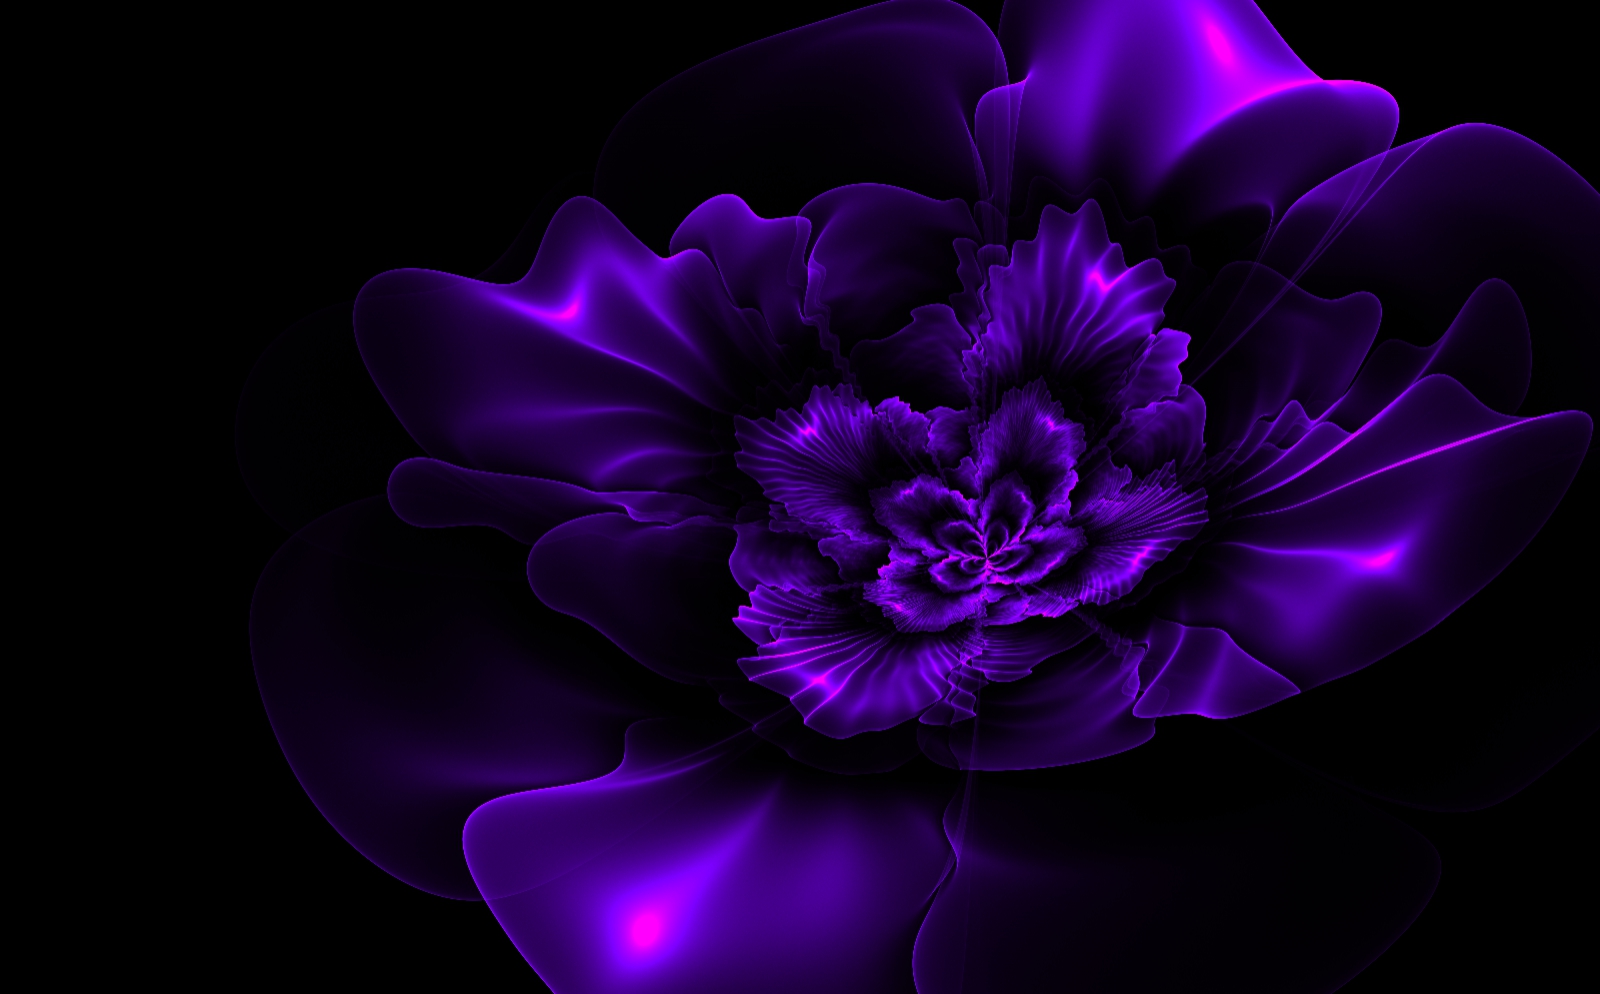 Dark purple fractal flower wallpaper   ForWallpapercom